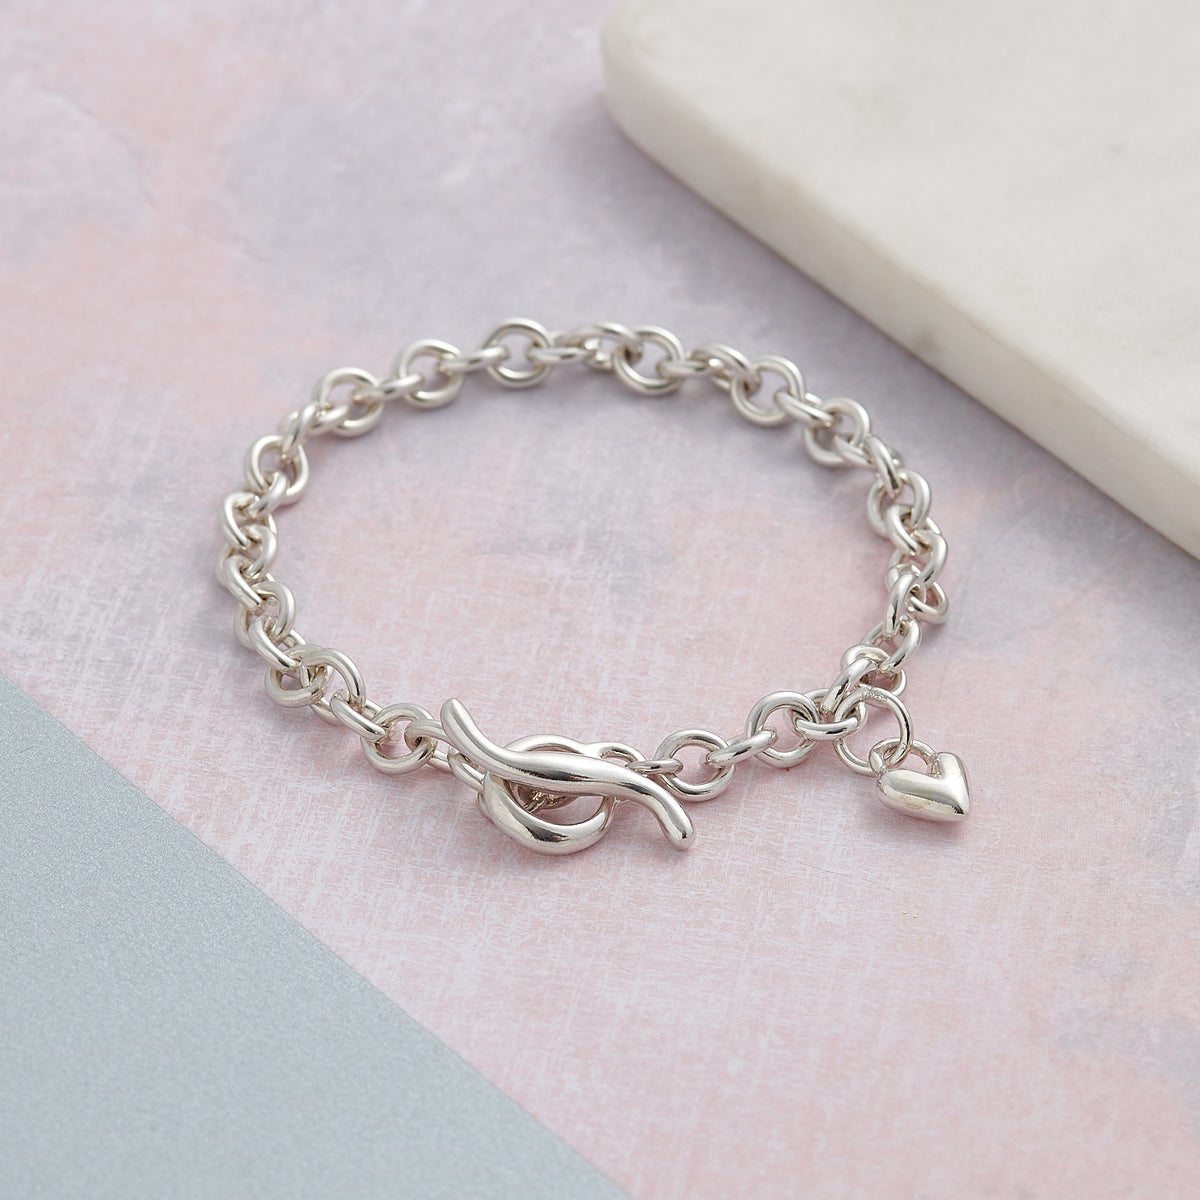 Solid sterling silver trace chain T-bar heart charm bracelet designer Scarlett Jewellery